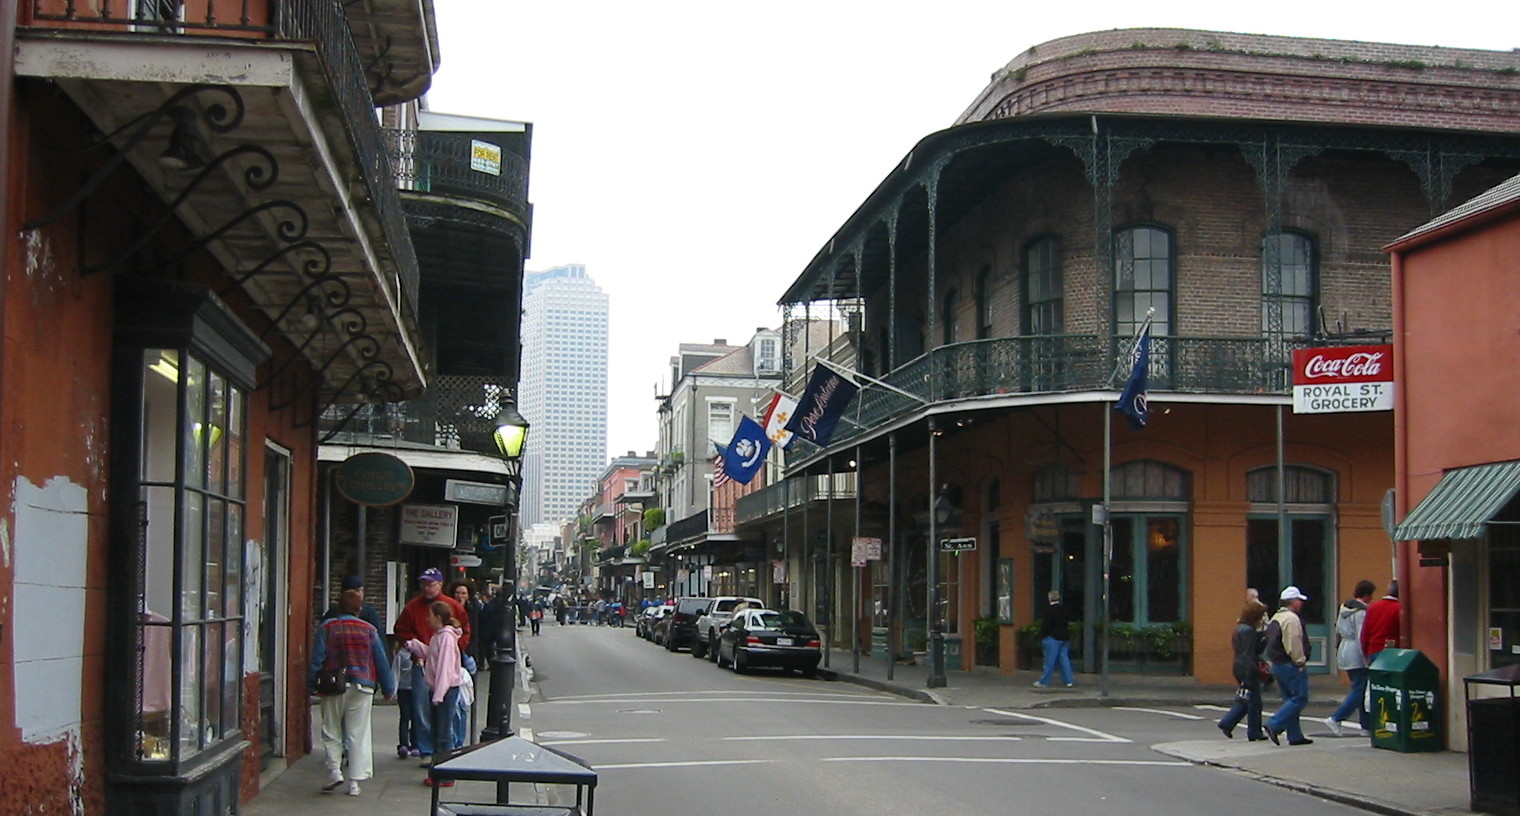 People enjoying walking around New Orleans